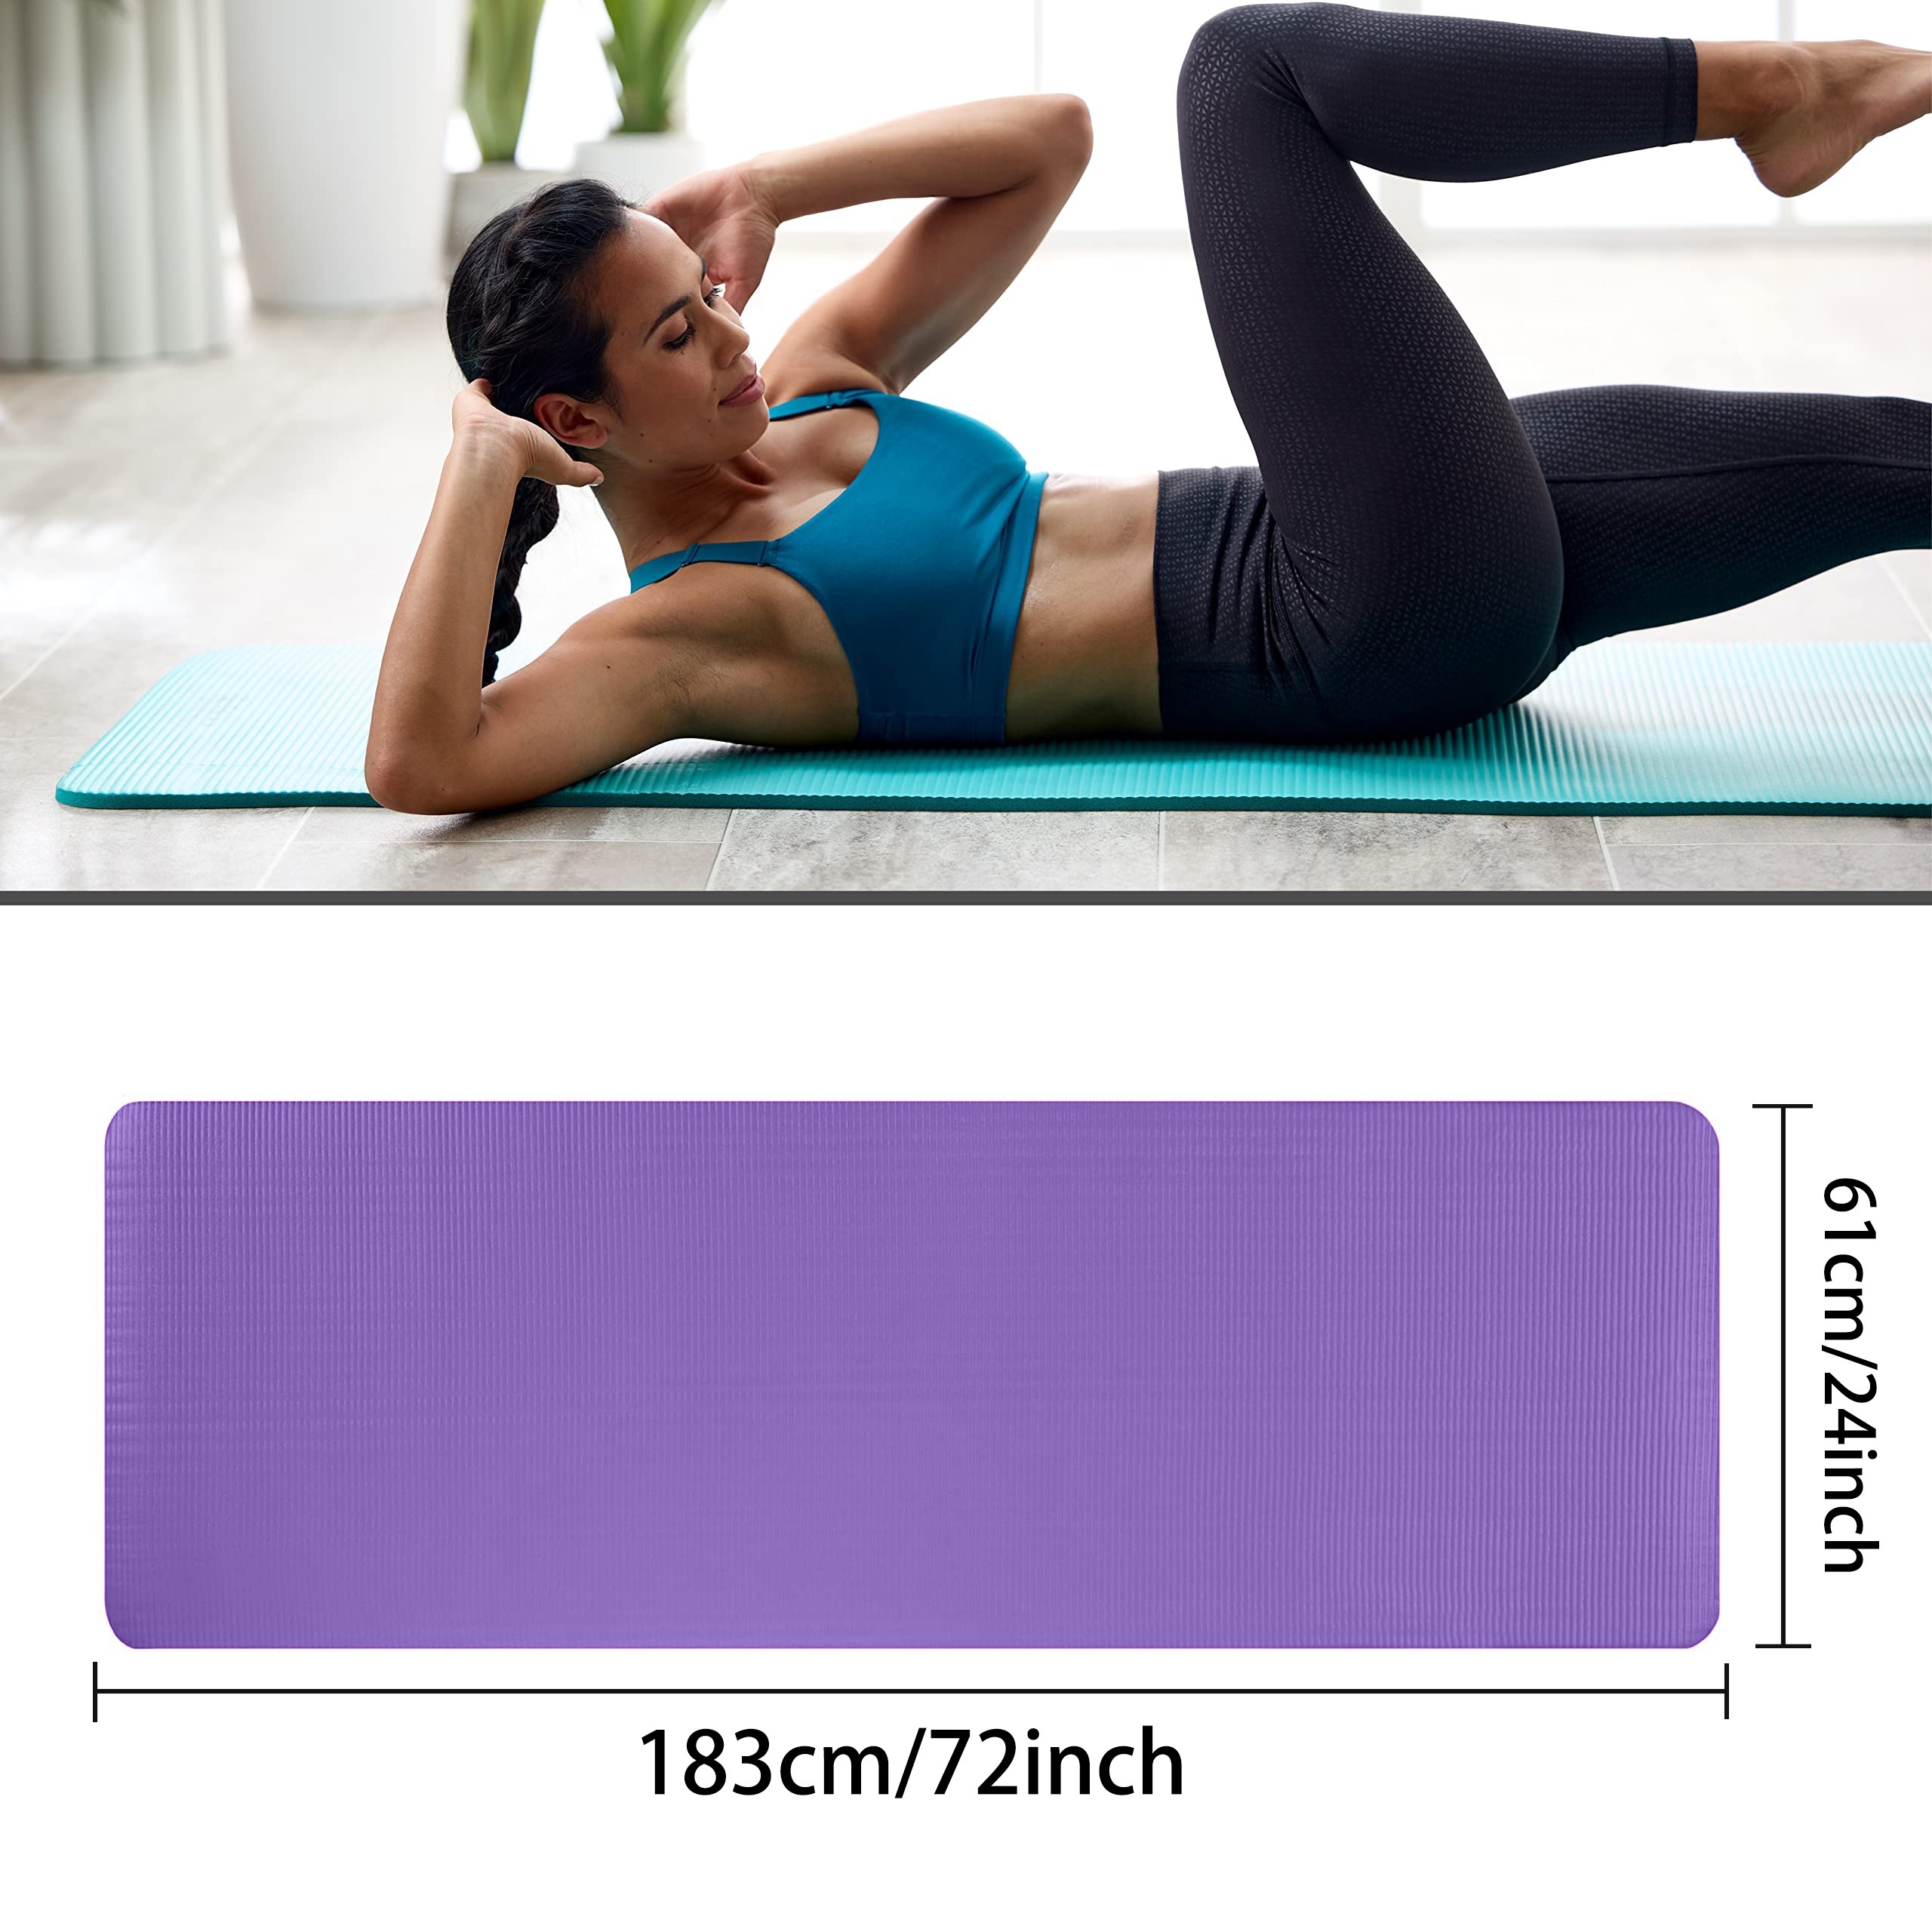 HxG.Esterilla de Yoga Pilates Fitness 1cm antideslizante NBR con